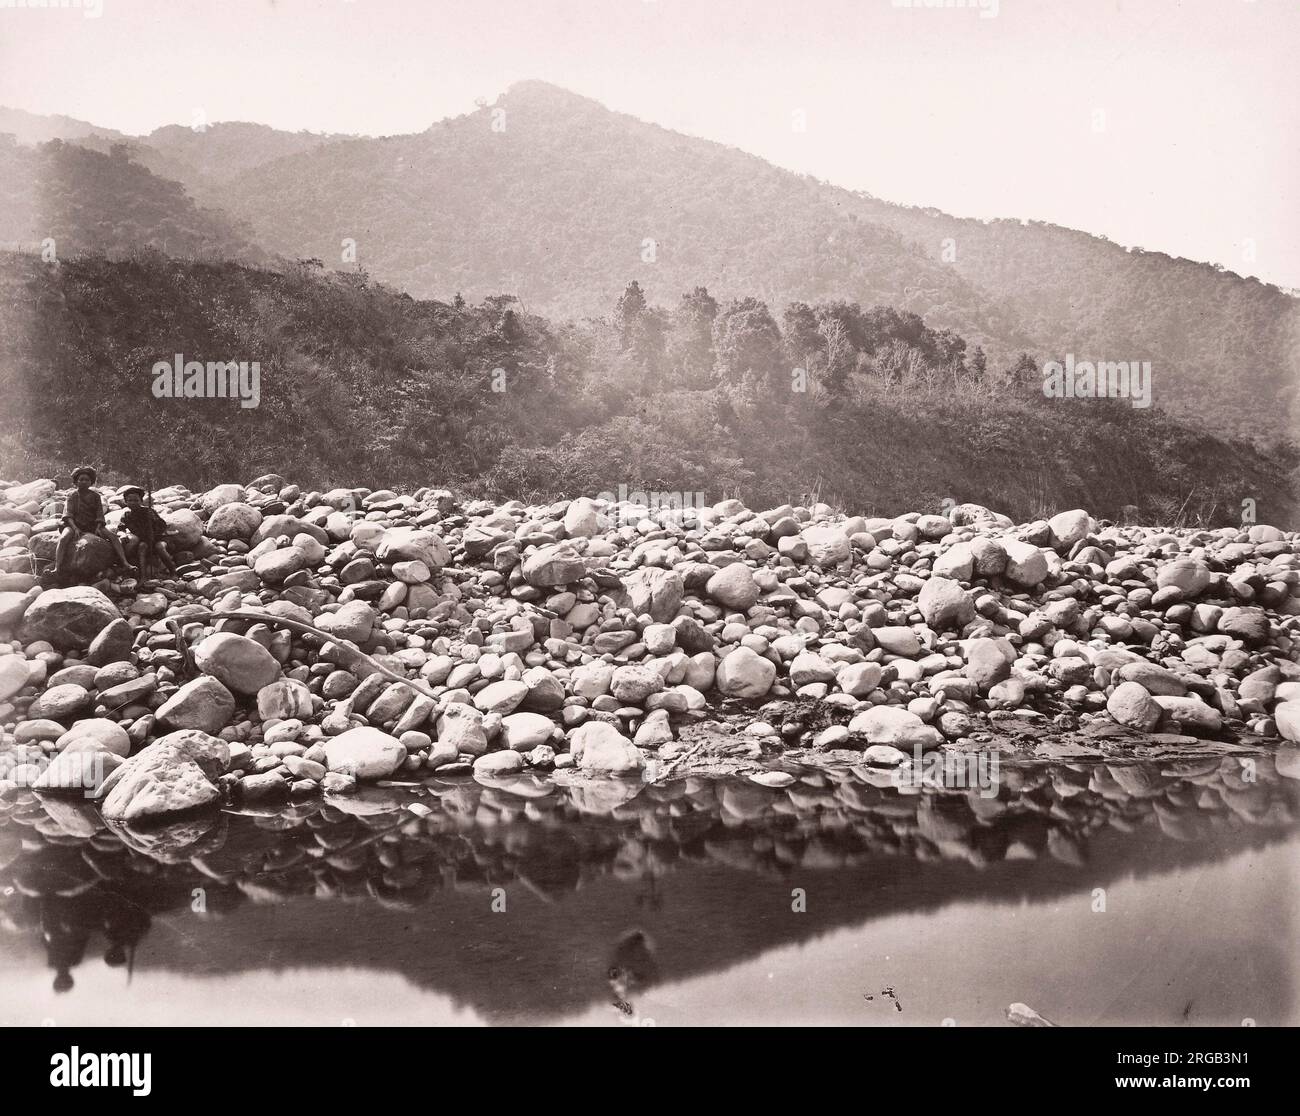 John Thomson (14 juin 1837 - 29 septembre 1921) photographe écossais, actif en Chine vers 1870, d'un album de ses images: mountain Stream, Formosa, Taiwan Banque D'Images